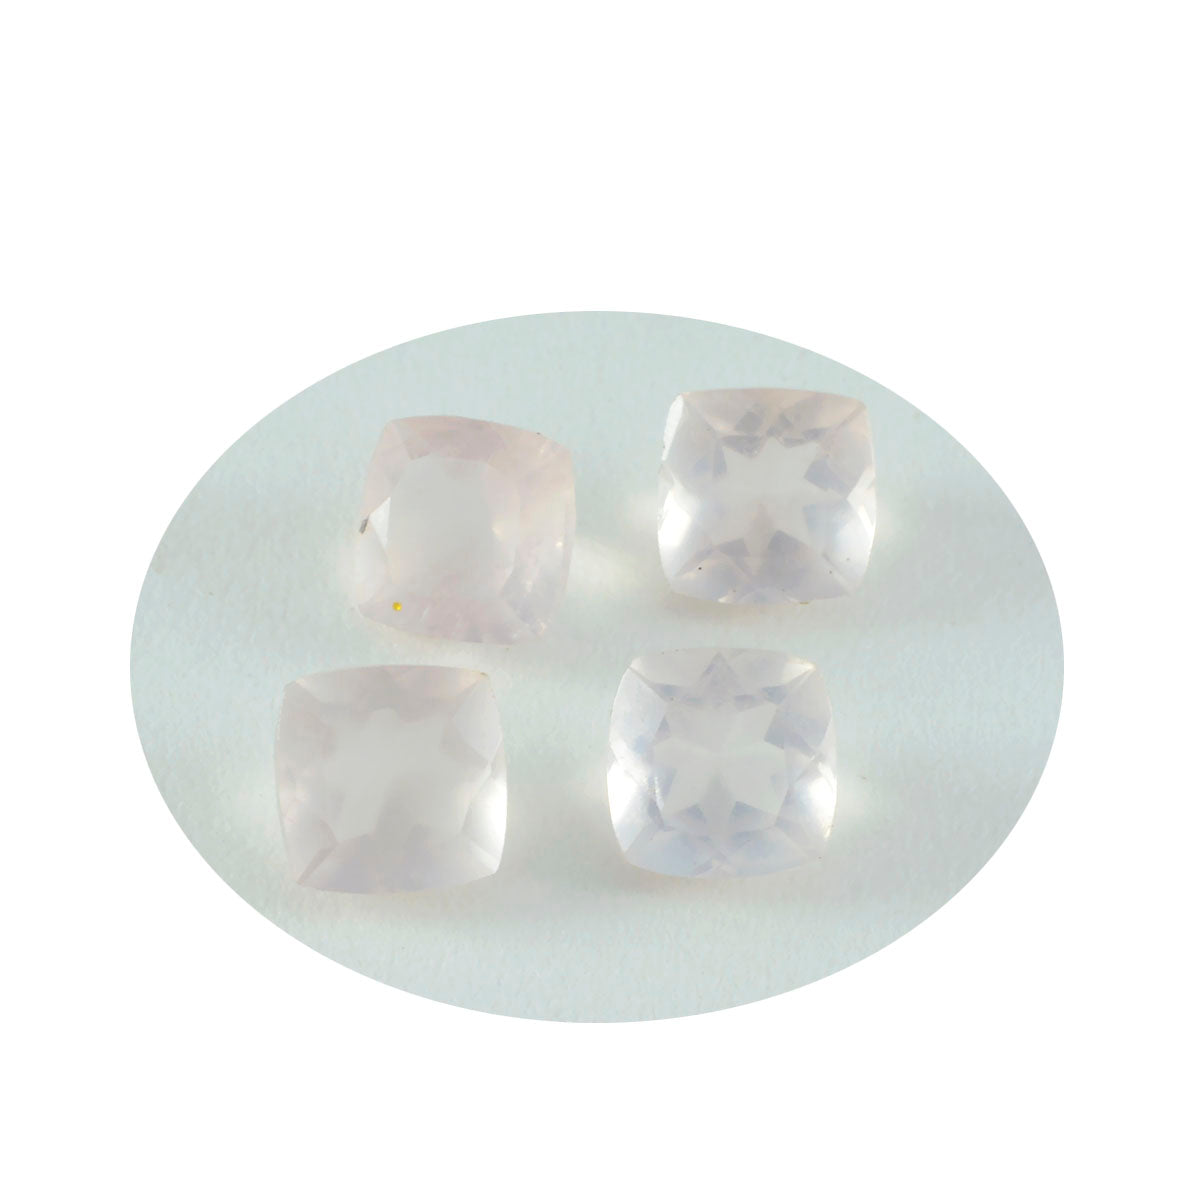 riyogems 1 шт. розовый кварц ограненный 6x6 мм в форме подушки красивые качественные драгоценные камни